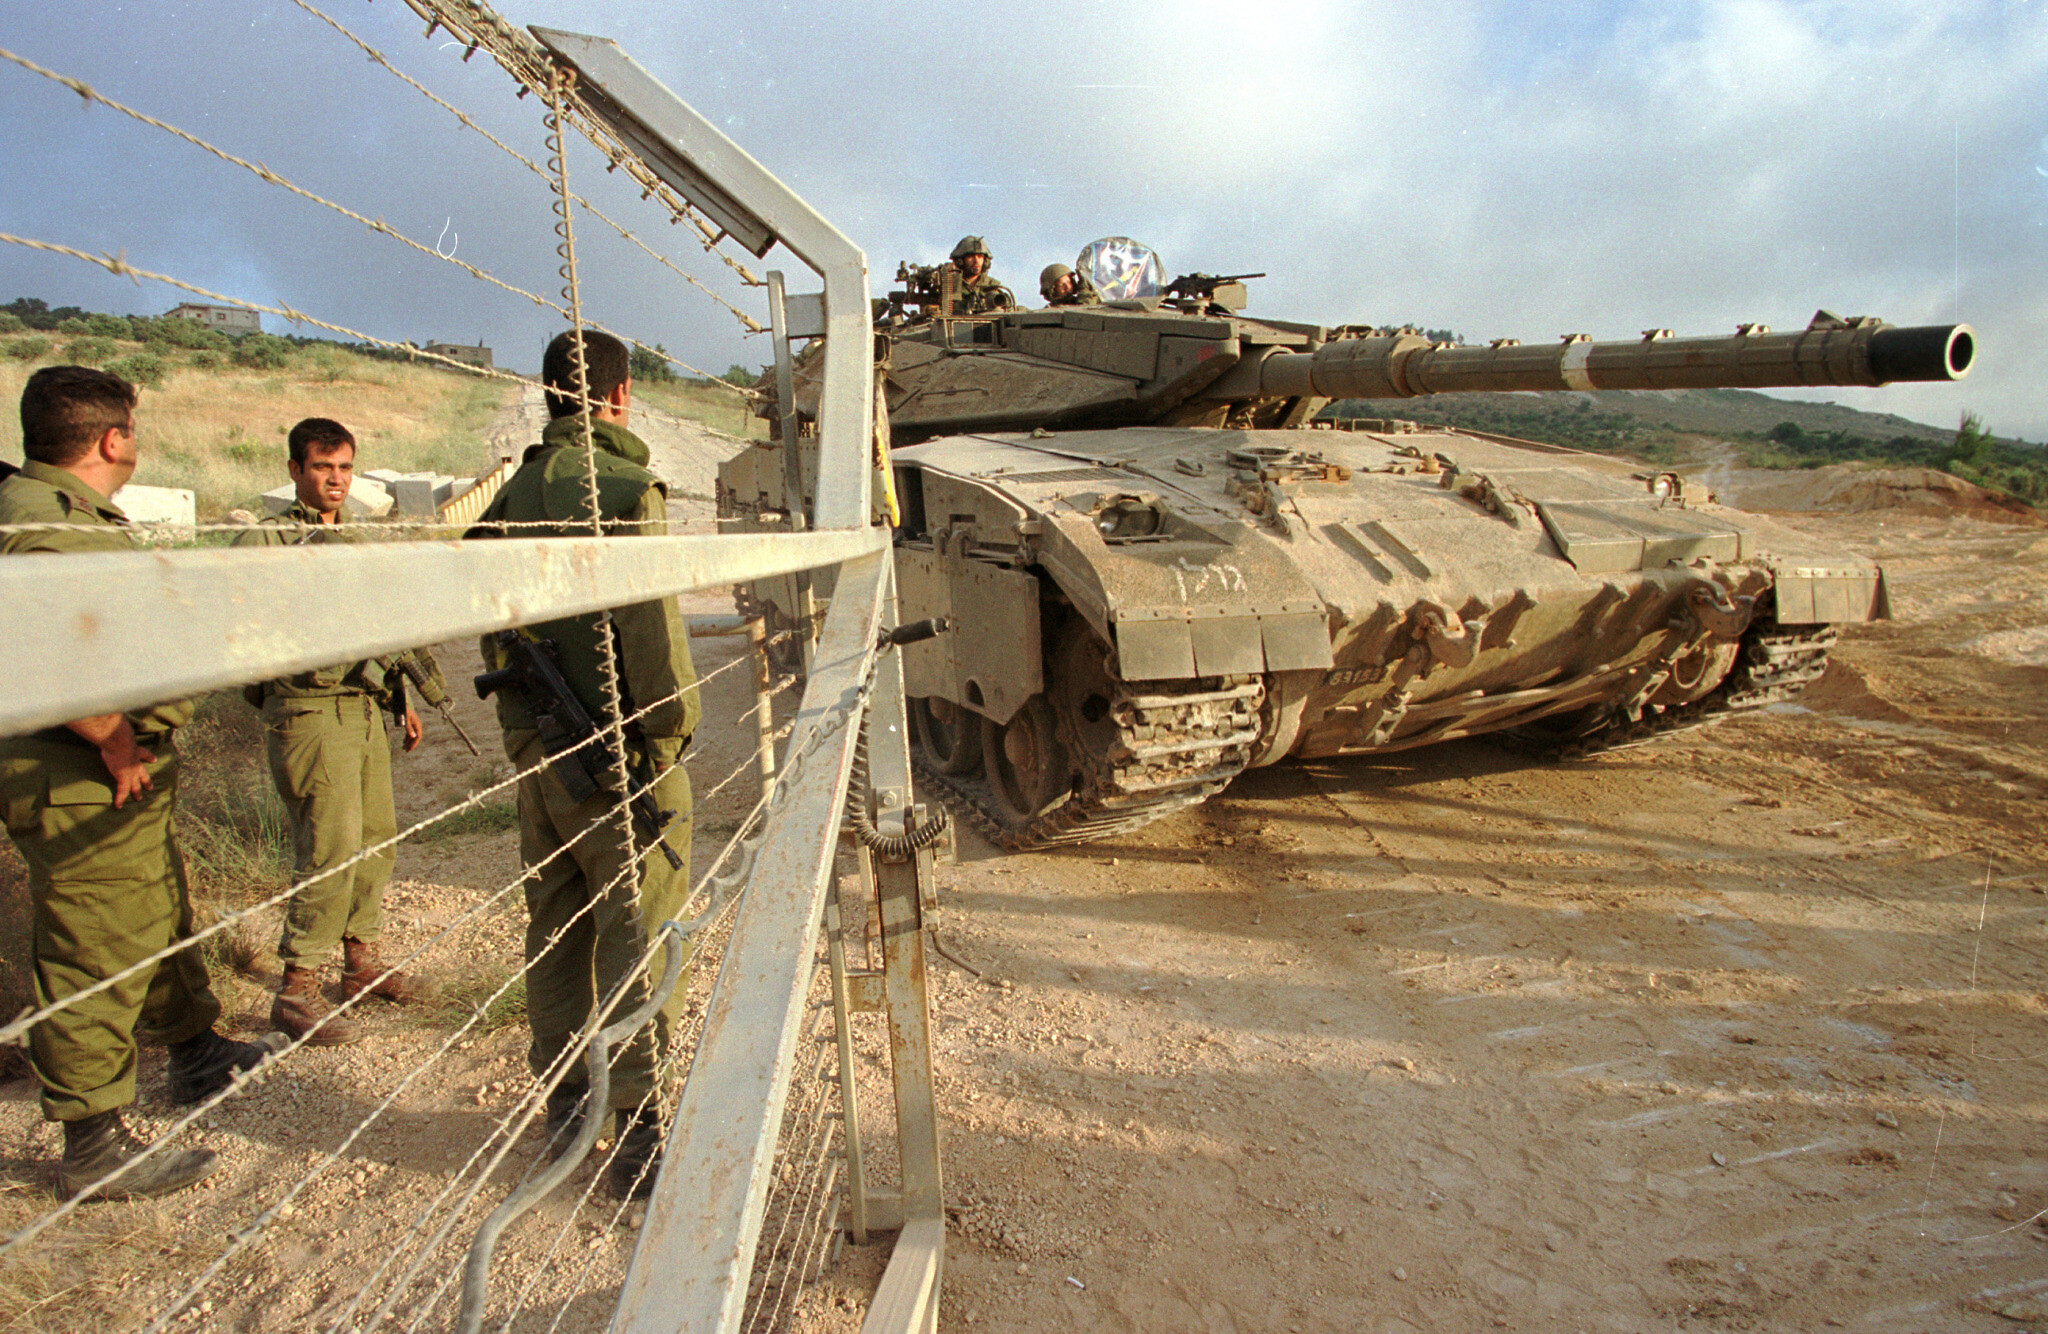 Des soldats israéliens ouvrant les portes pour le passage d'un char lors du retrait de Tsahal du Liban, le 22 juin 2000. (Crédit : Flash90)